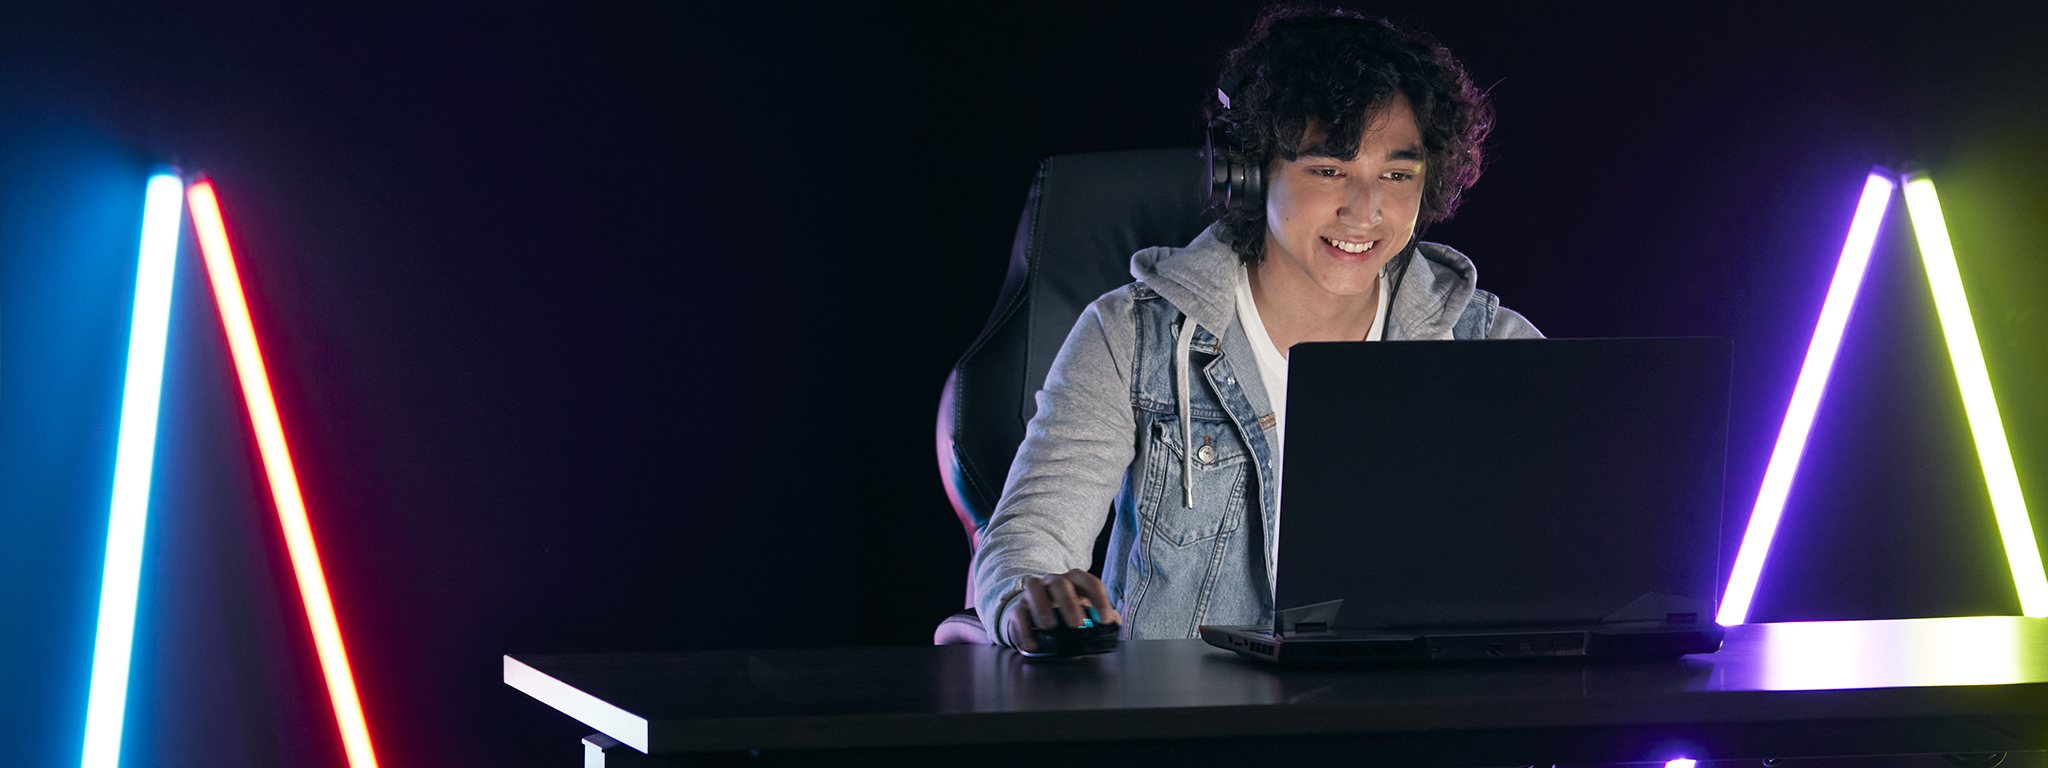 暗い部屋でノートパソコンでプレイする若いゲーマー